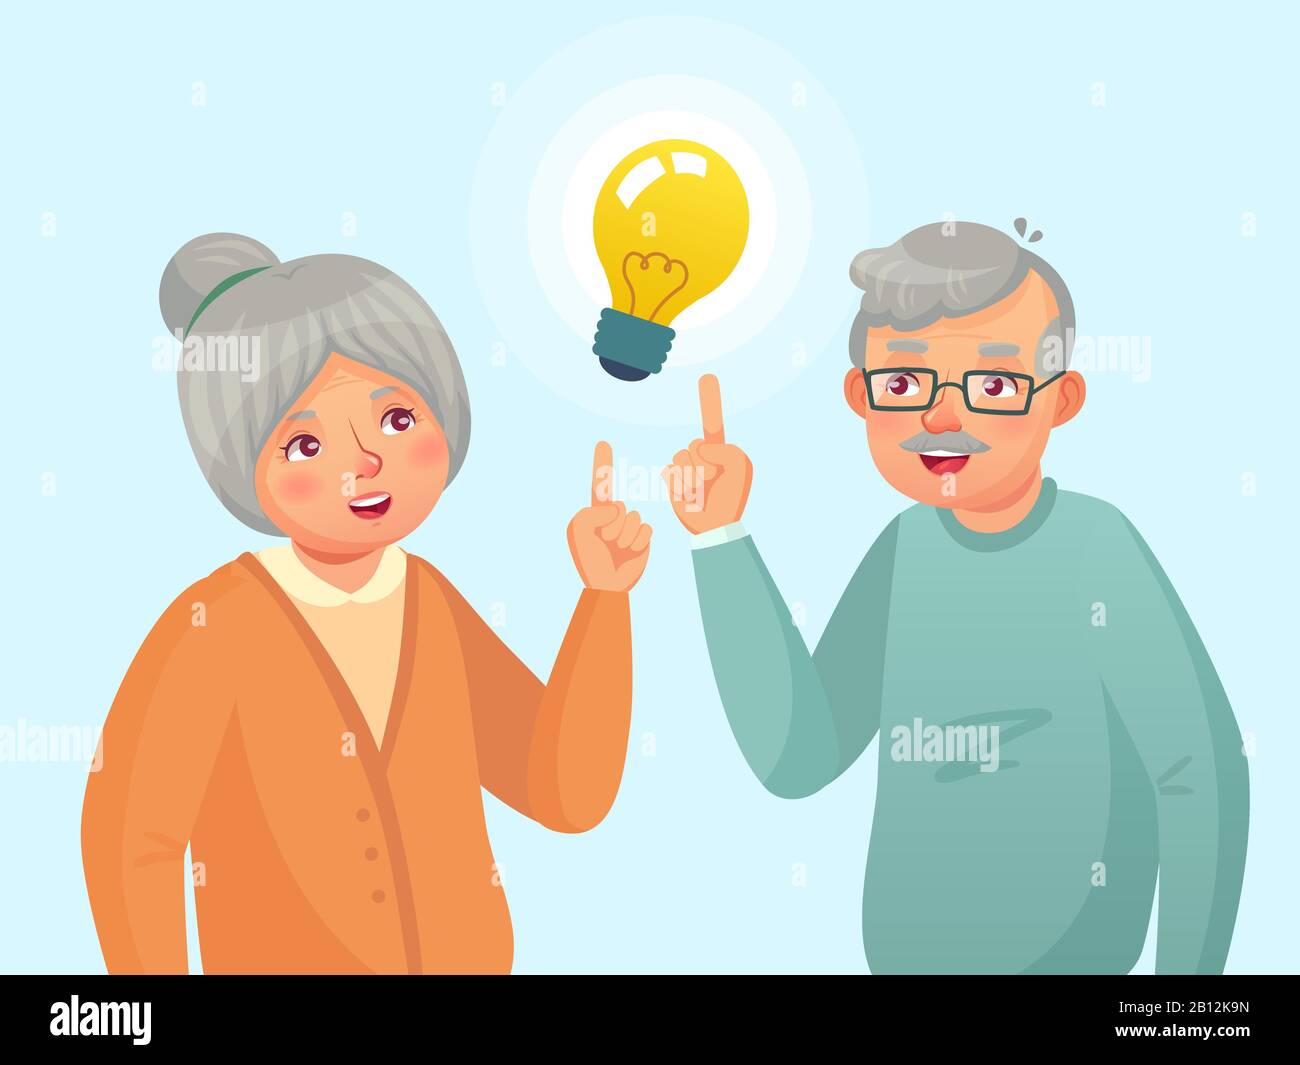 Seniors idea. La coppia della gente anziana ha idea, il problema anziano di pensiero anziano. Immagine vettoriale cartoon di nonno e nonna Illustrazione Vettoriale